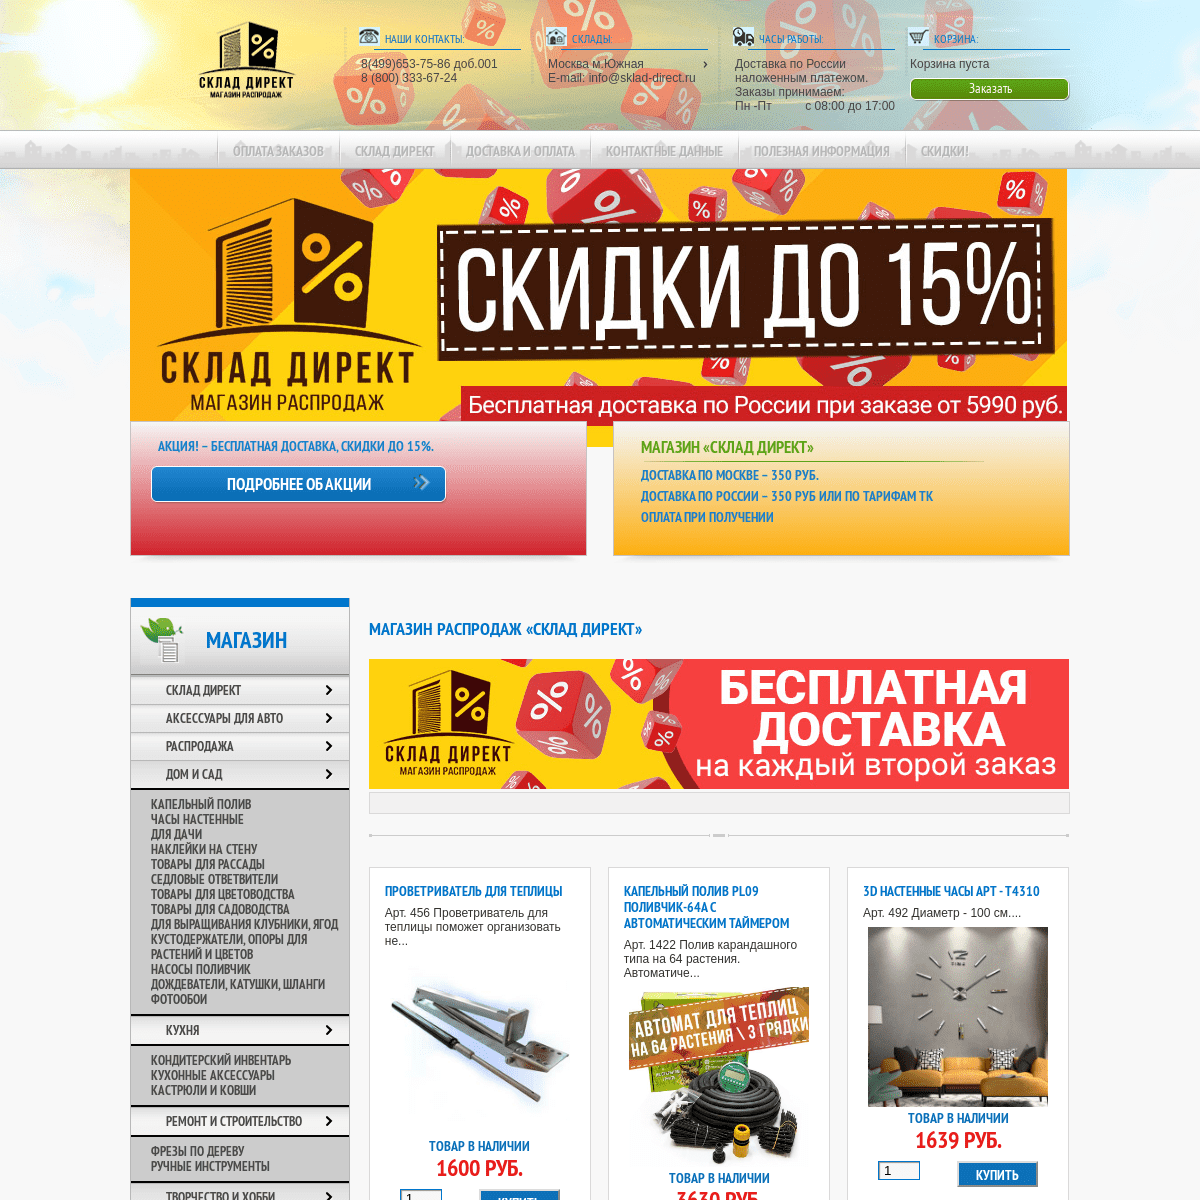 A complete backup of sklad-direct.ru